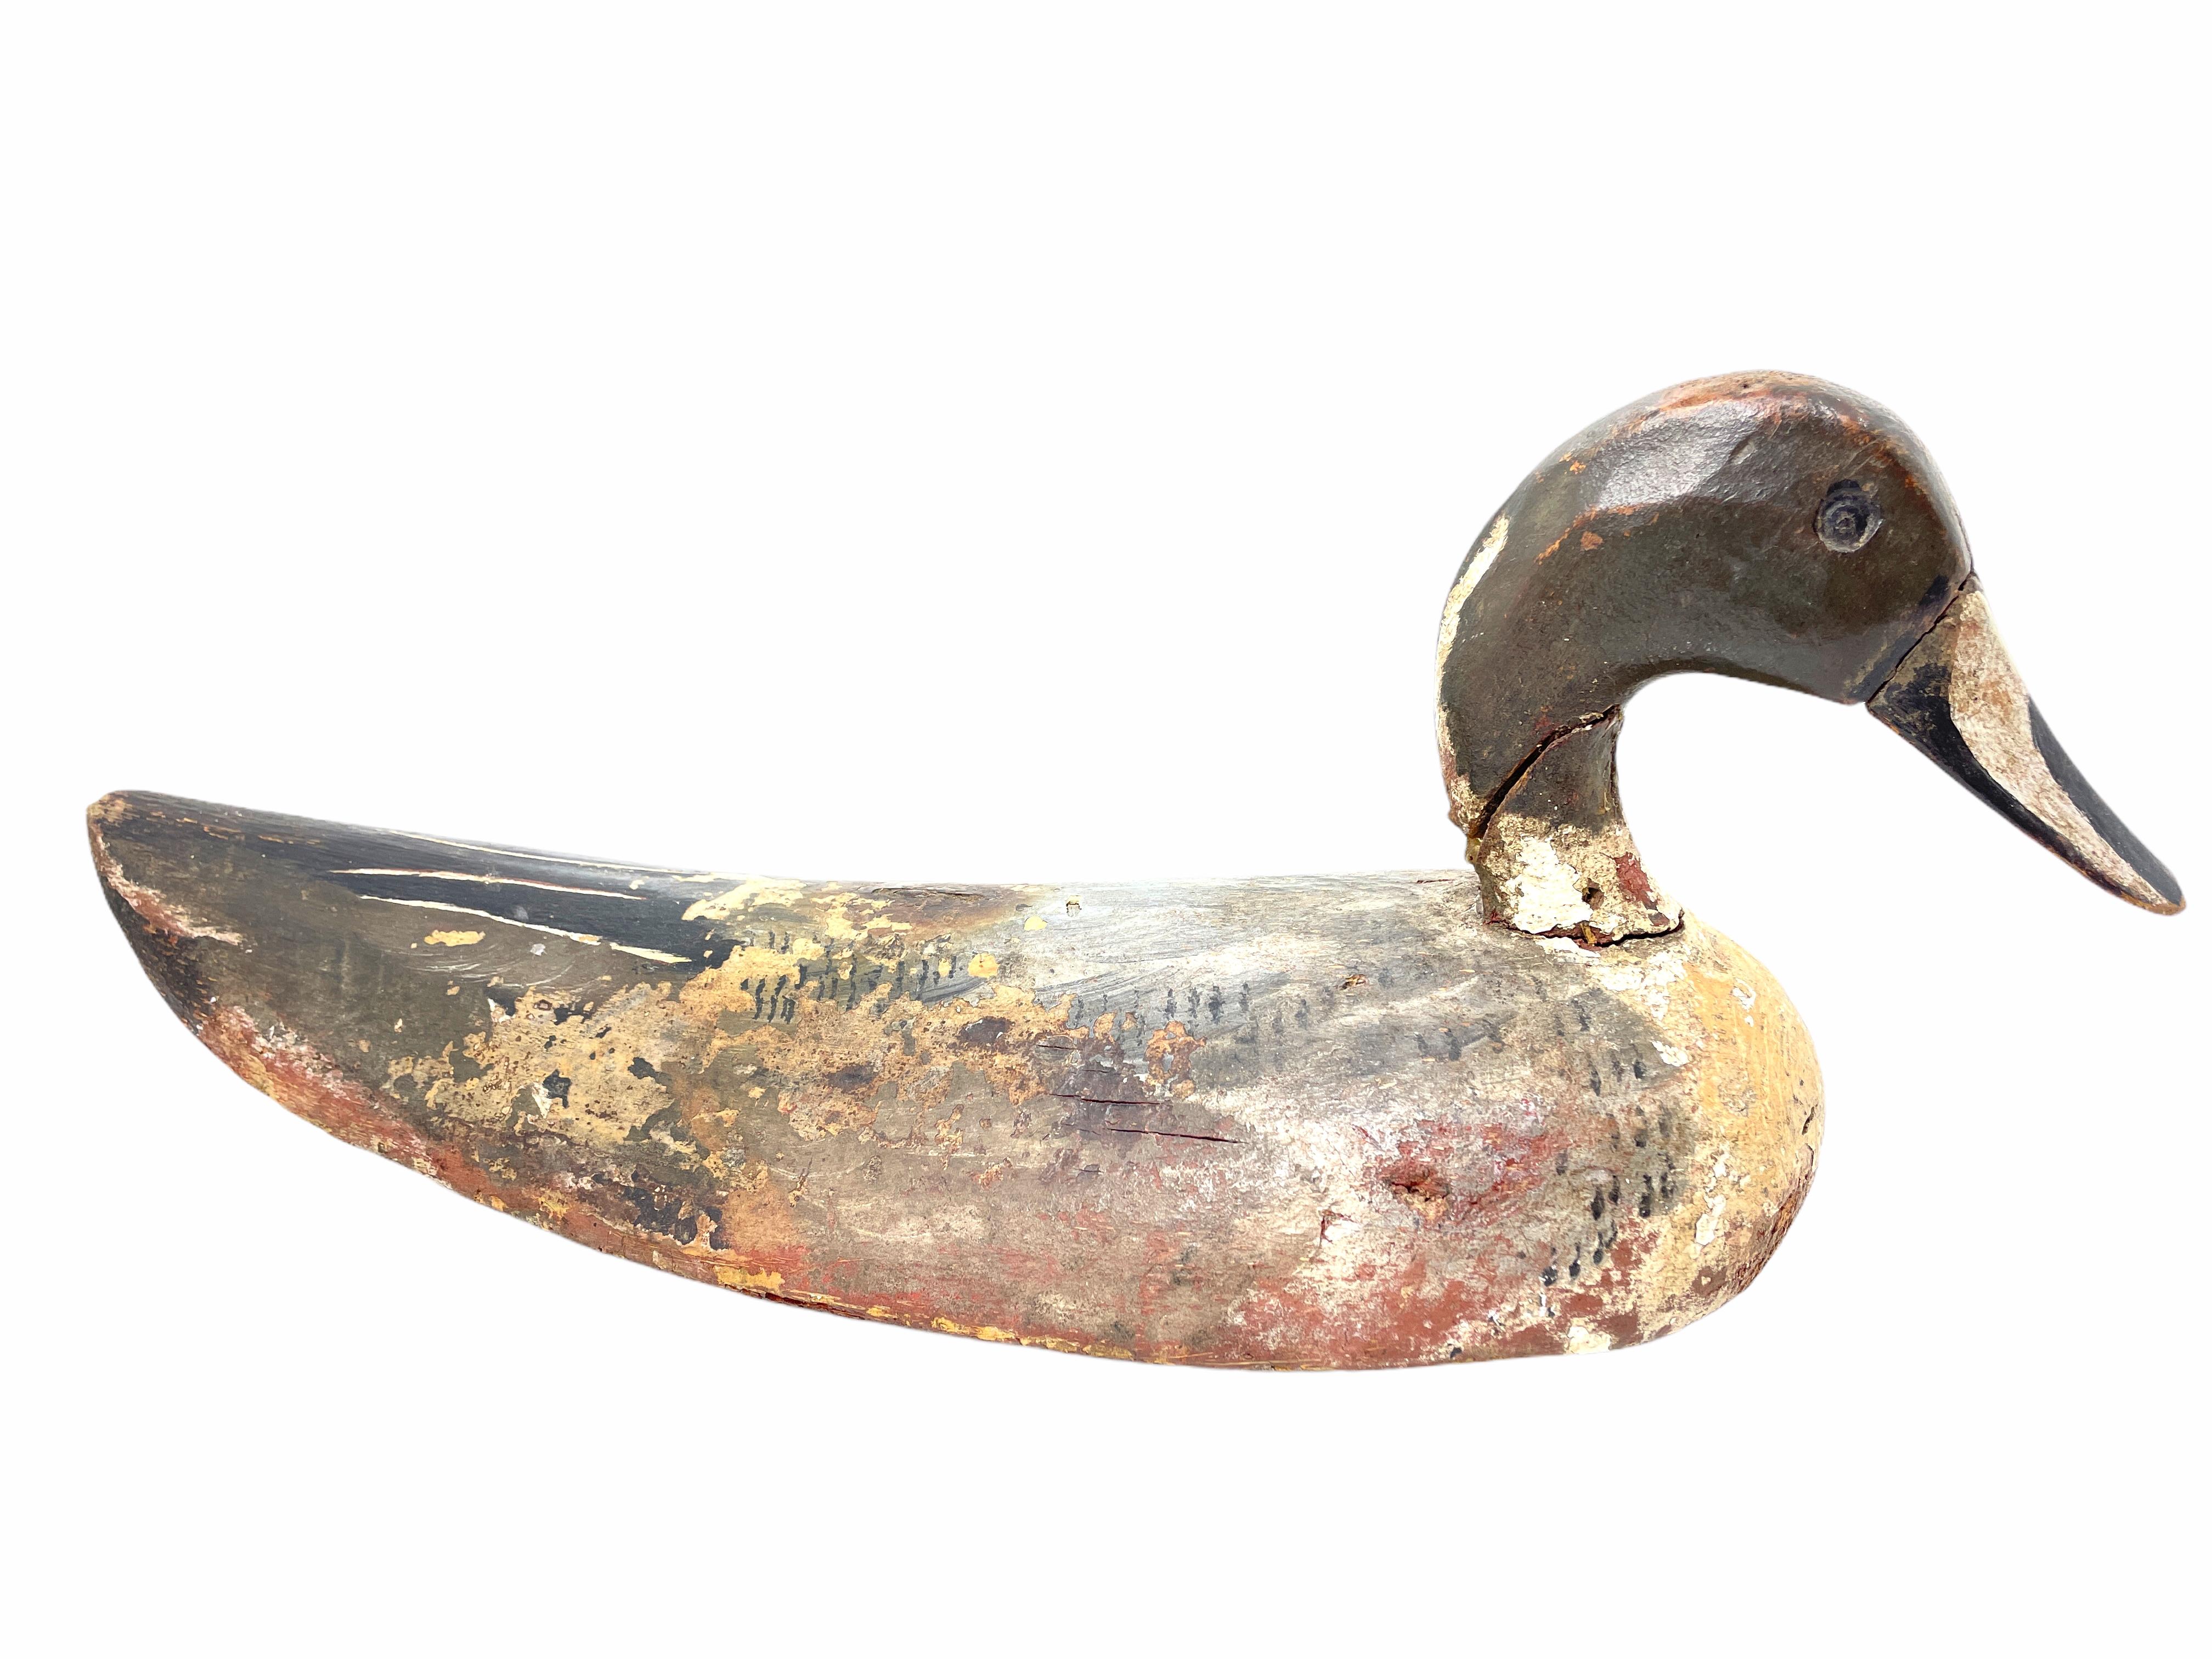 Diese handgeschnitzte und handbemalte Entenattrappe wurde in Deutschland bei einem Nachlassverkauf gefunden und ist perfekt für den Sammler. Von einem früheren Jäger gut genutzt, ist die Farbe im Laufe der Zeit verblasst, obwohl die ursprünglichen